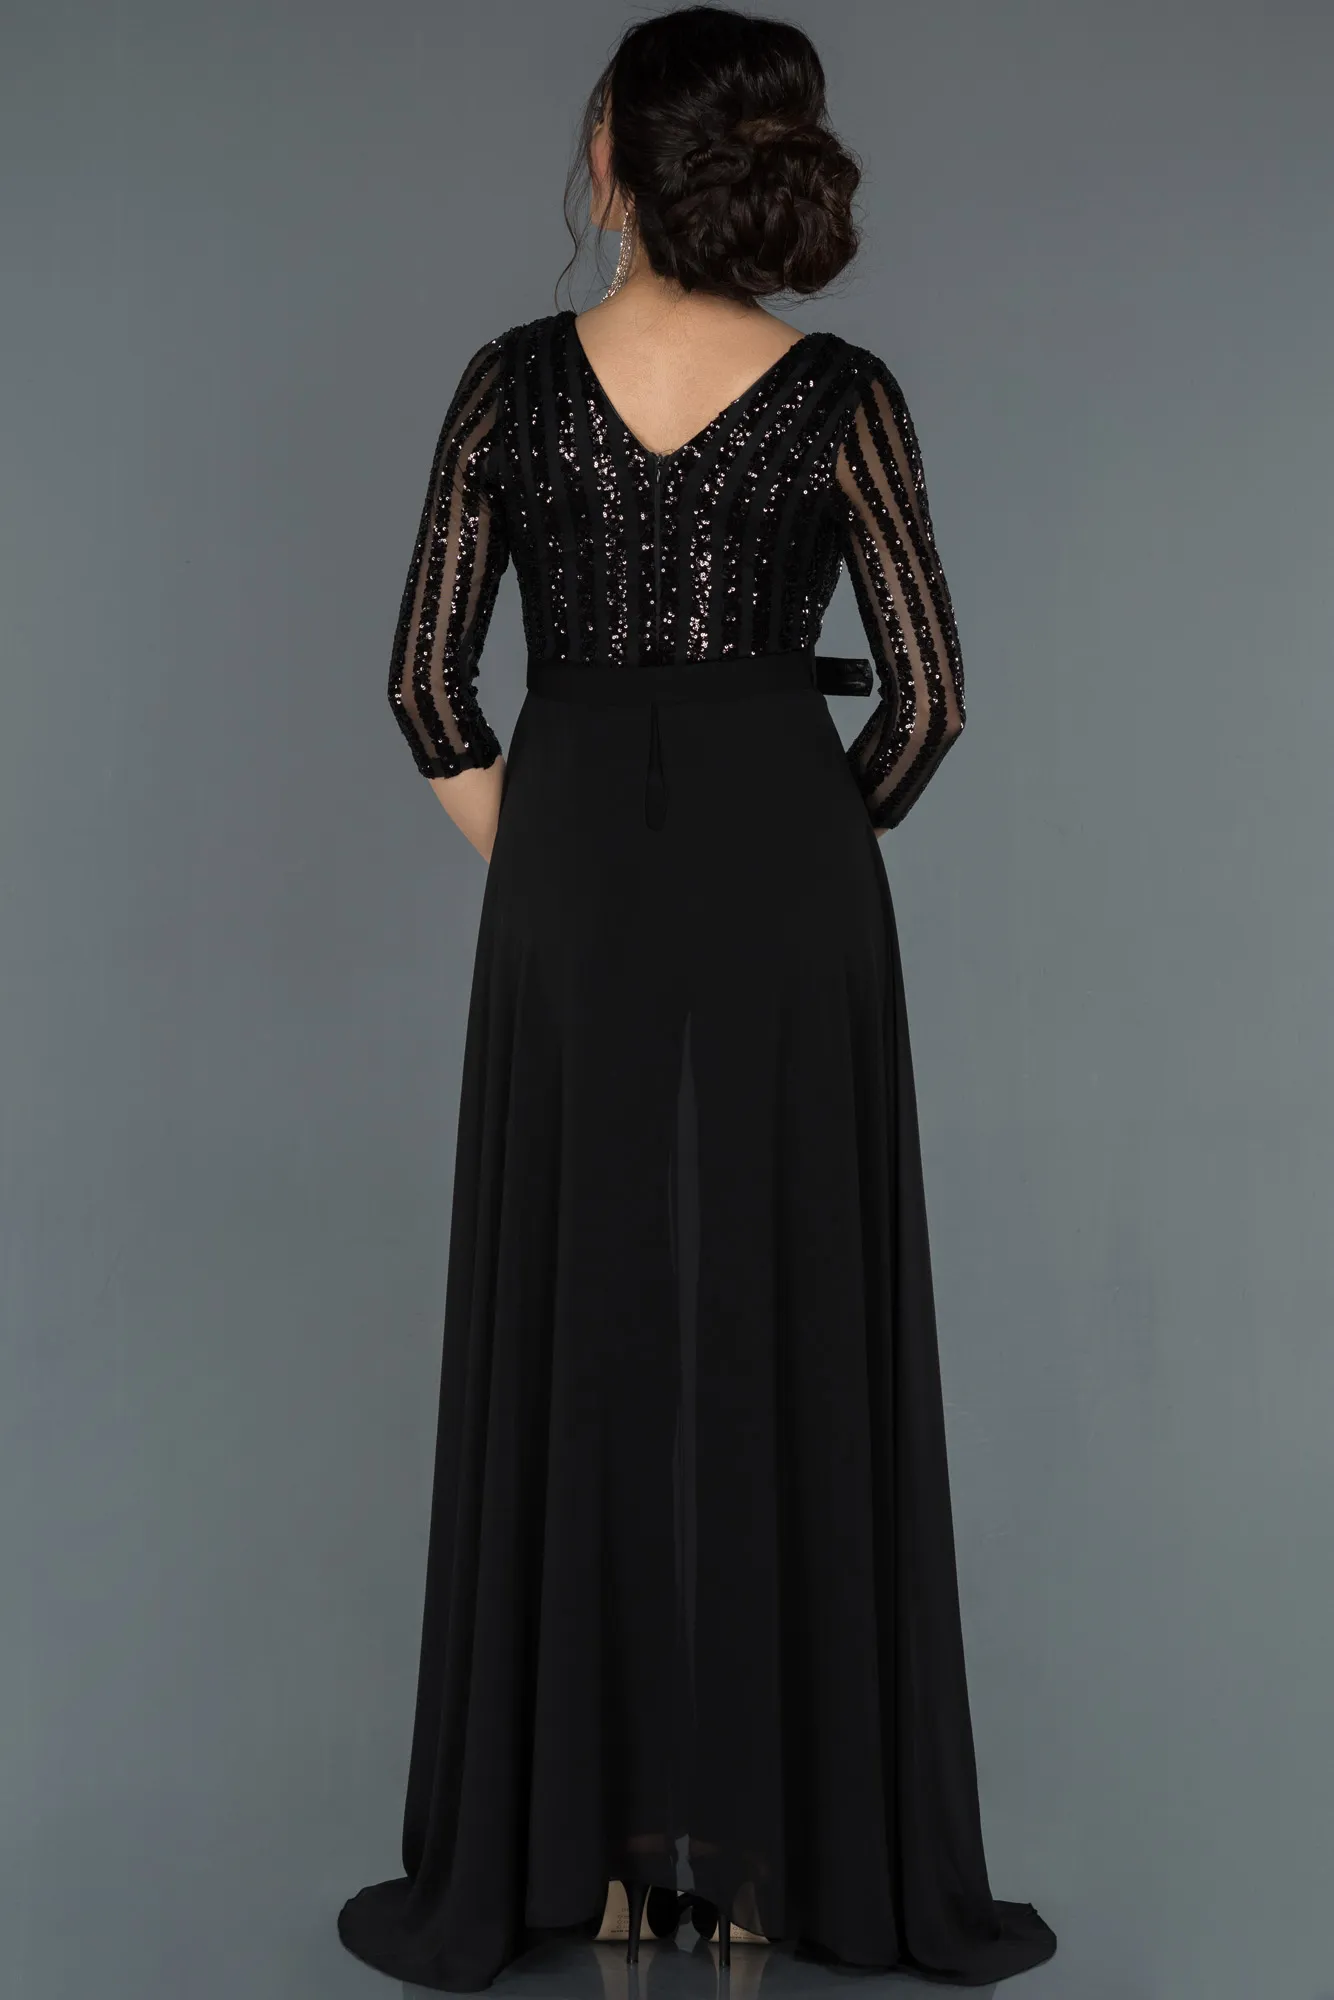 Black-Long Evening Dress ABT052